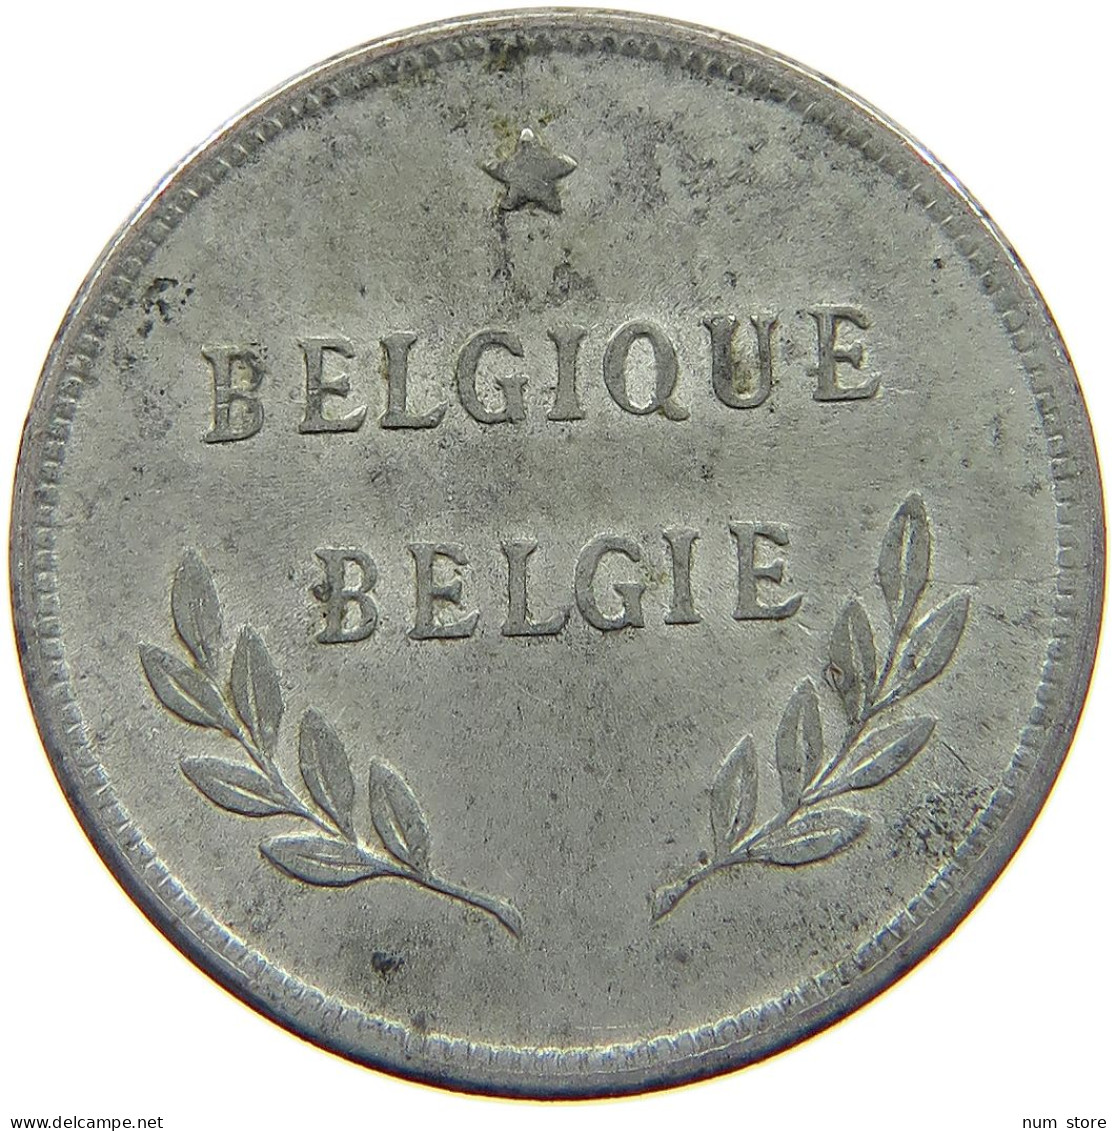 BELGIUM 2 FRANCS 1944 #c007 0279 - 2 Francs (1944 Liberazione)